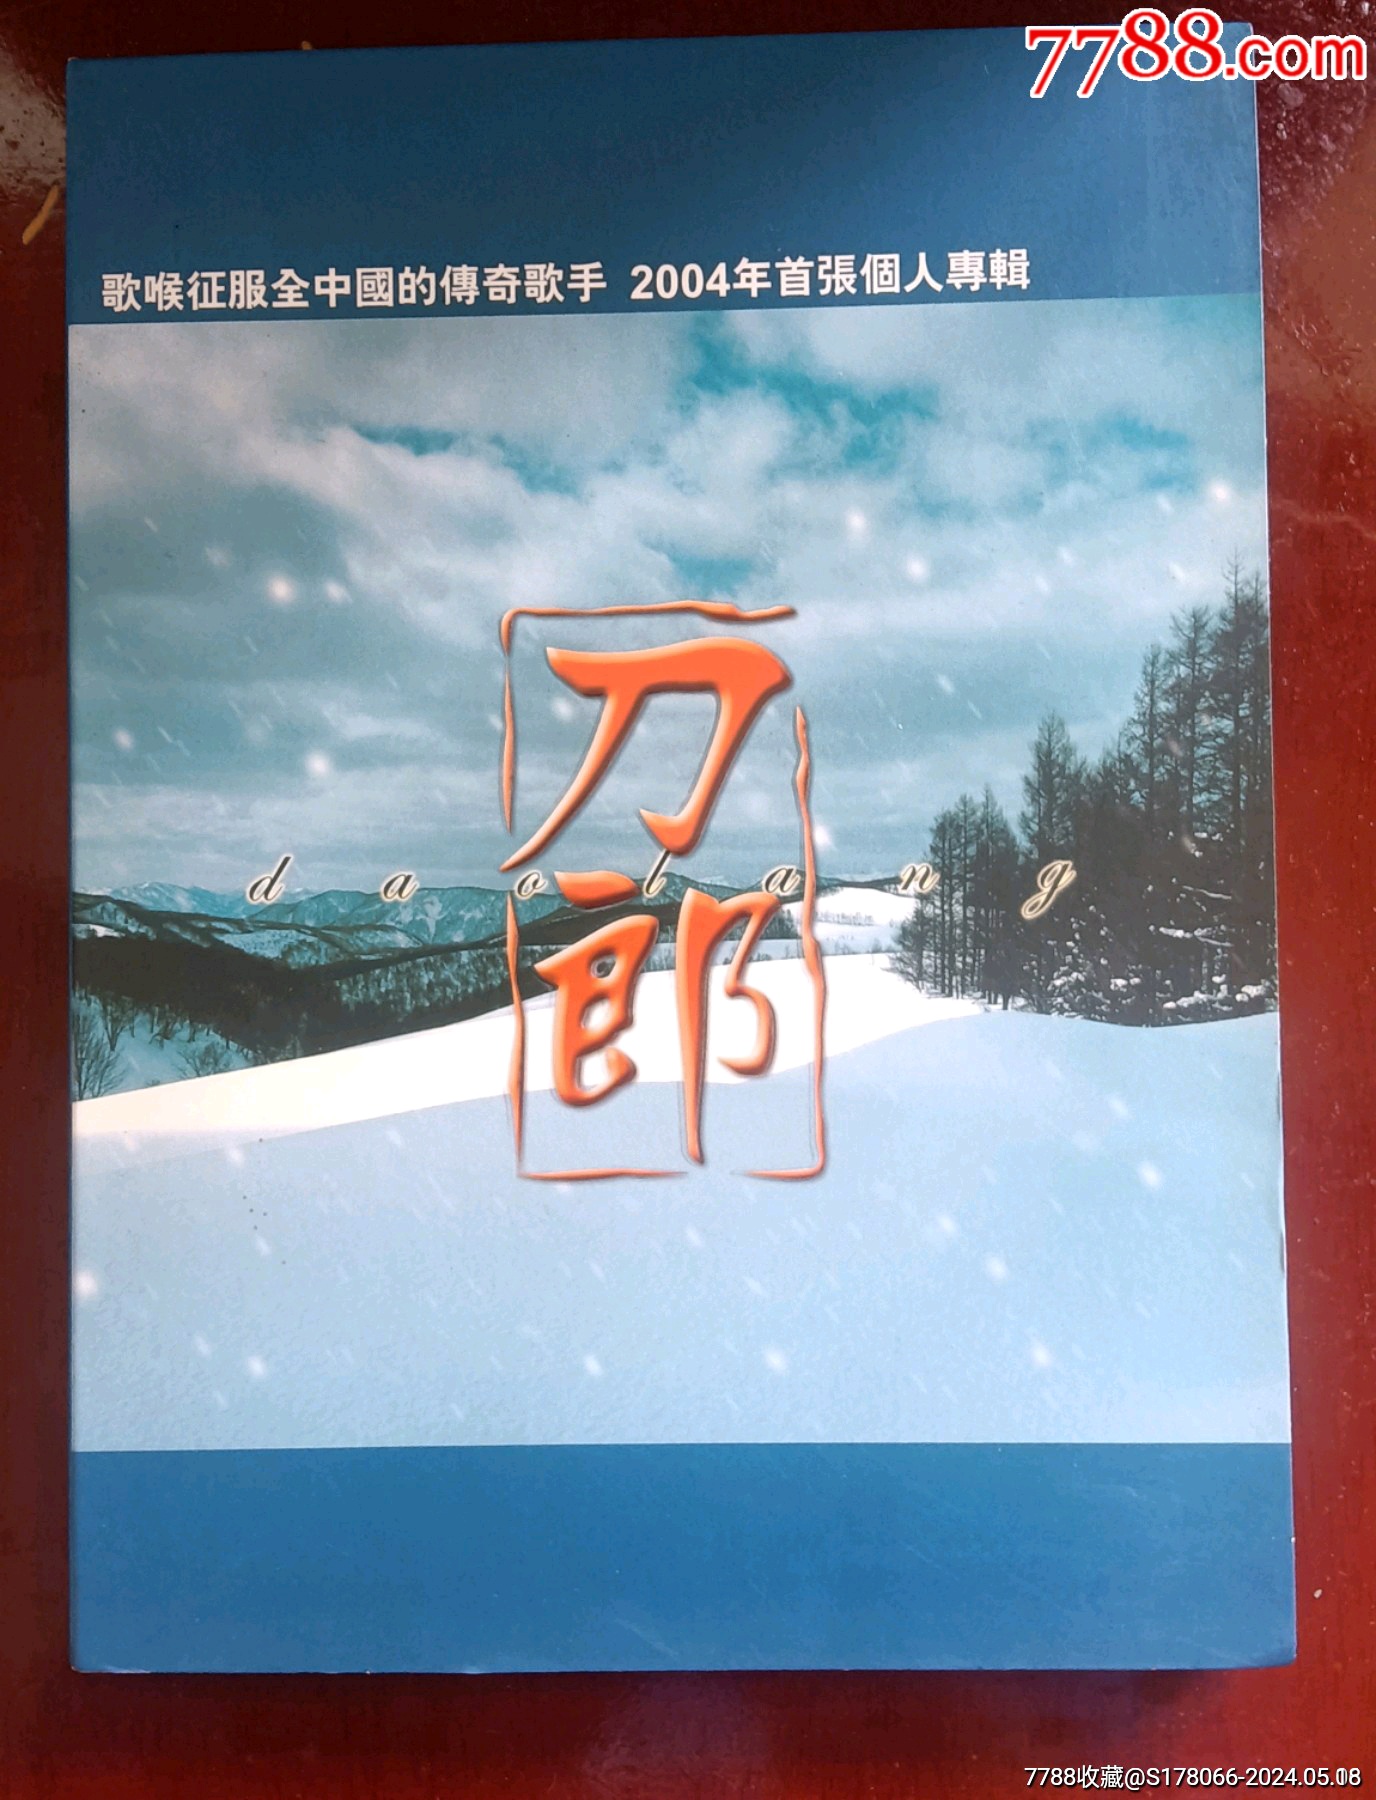 刀郎台版2002年的第一场雪